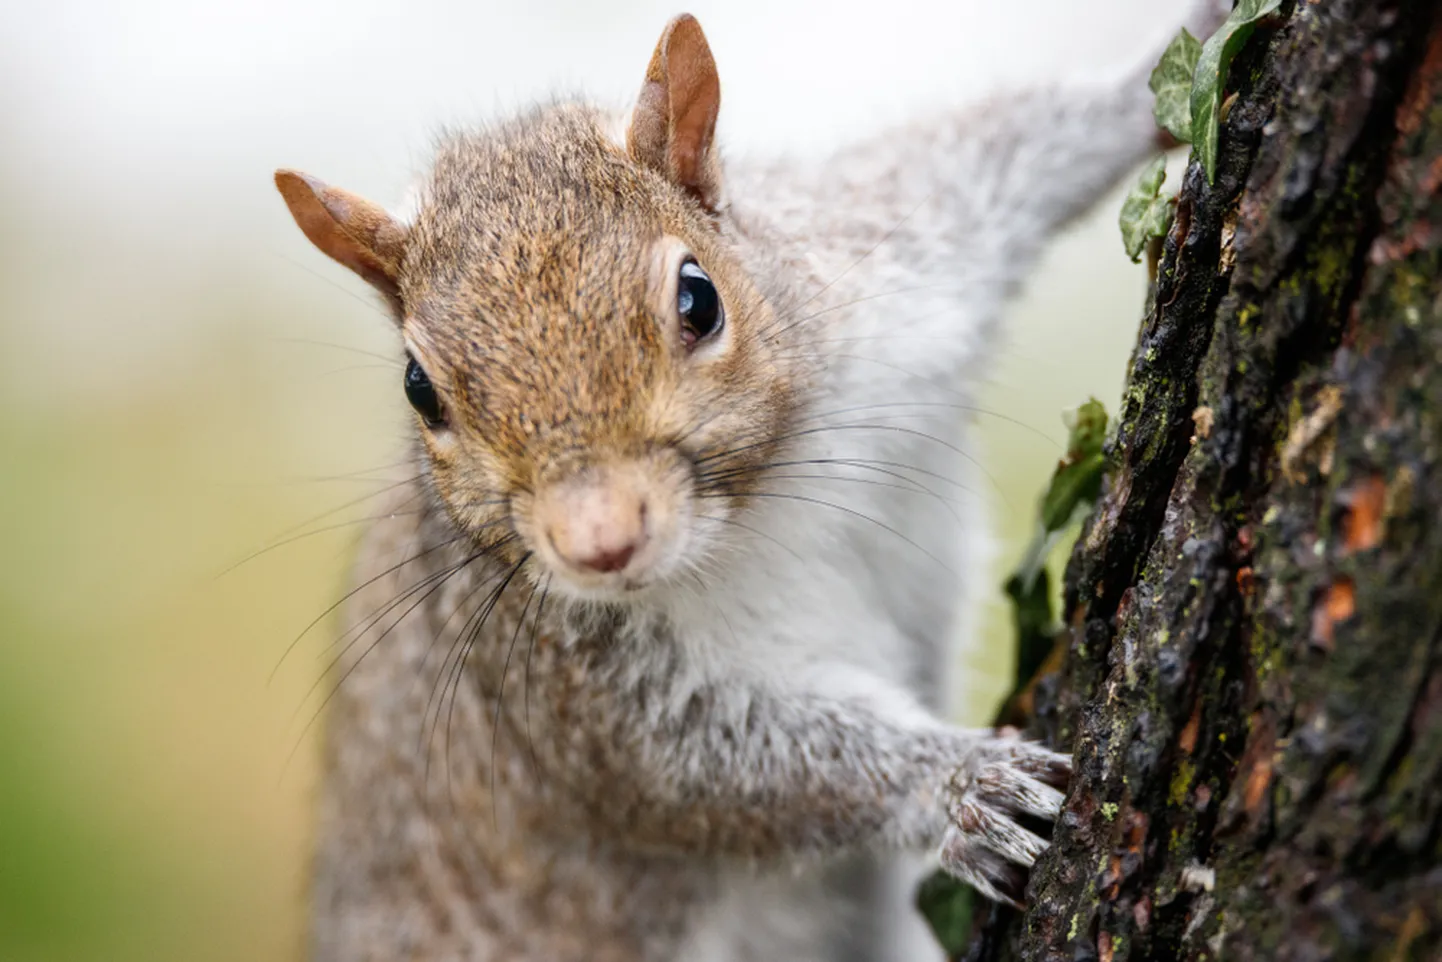 Keskkonnaamet tuletab meelde, et metslooma abistades peab arvestama ka sellega, et terav nokk, küünised või hambad ei ole iluasjad ning enesekaitseks võetakse need kasutusse – ka väikesed ja armsad loomad, näiteks oravad ja siilid, võivad väga valusasti hammustada